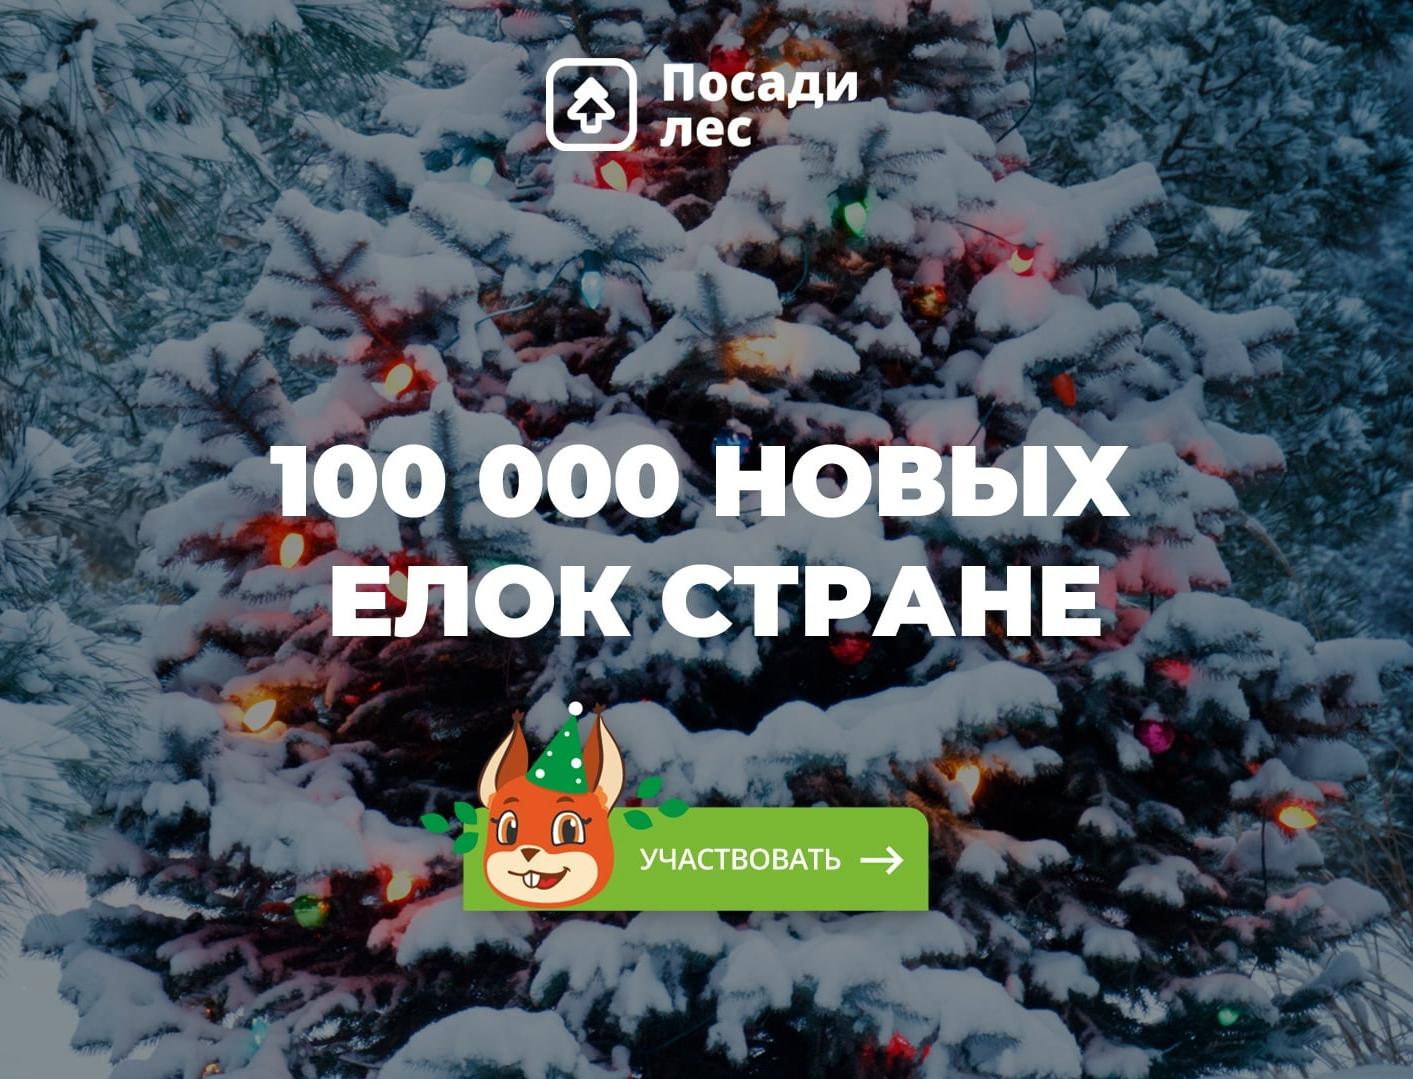 Россиян приглашают подарить 100 тысяч ёлок стране в Новый год